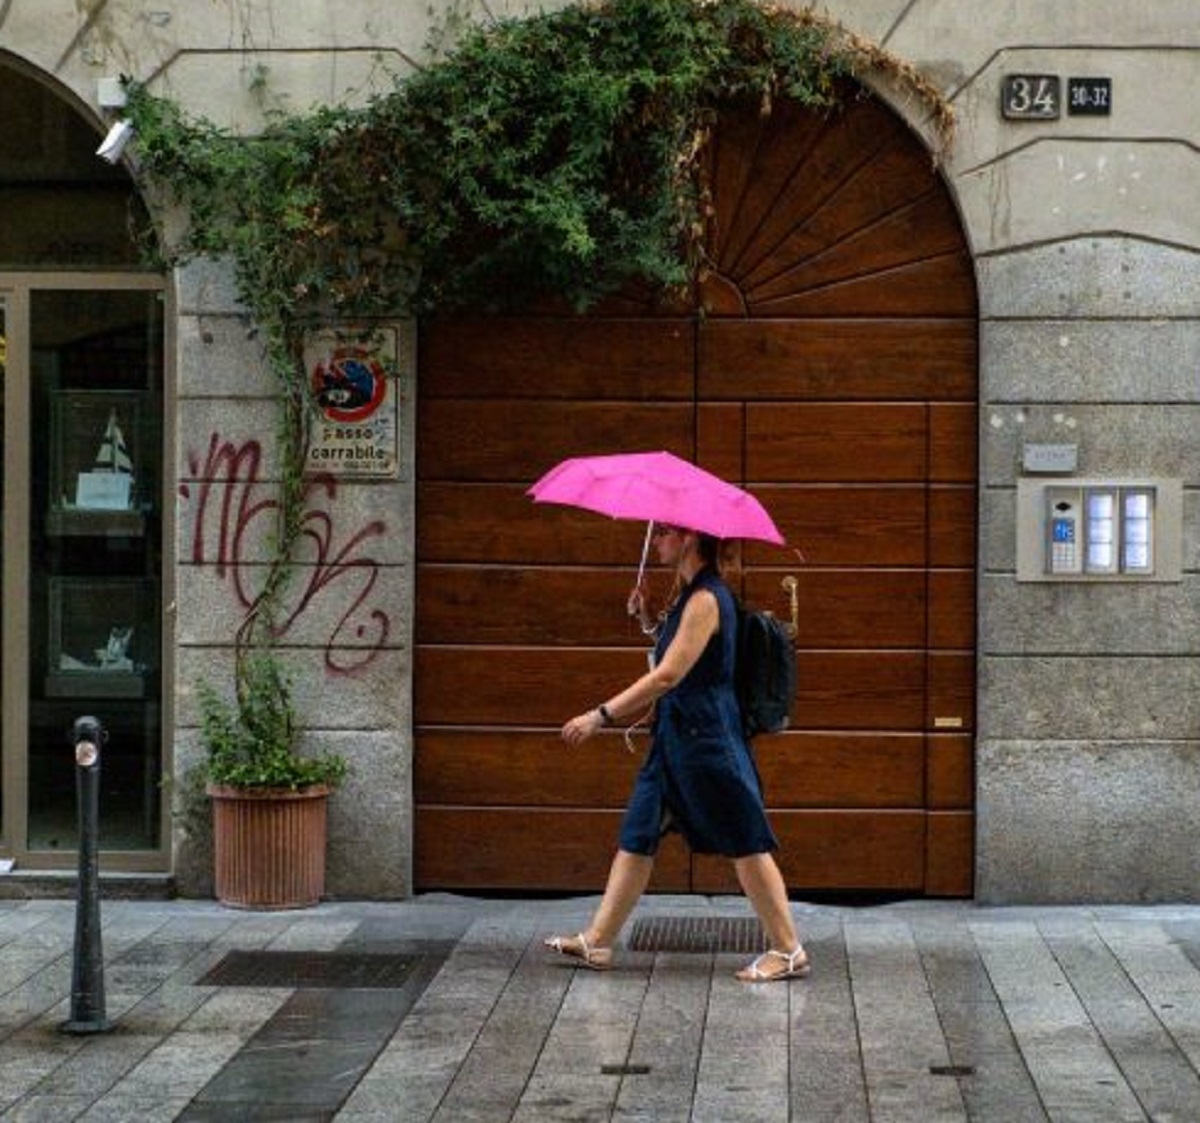 Meteo Italia 2 settembre 2021 previsioni piogge